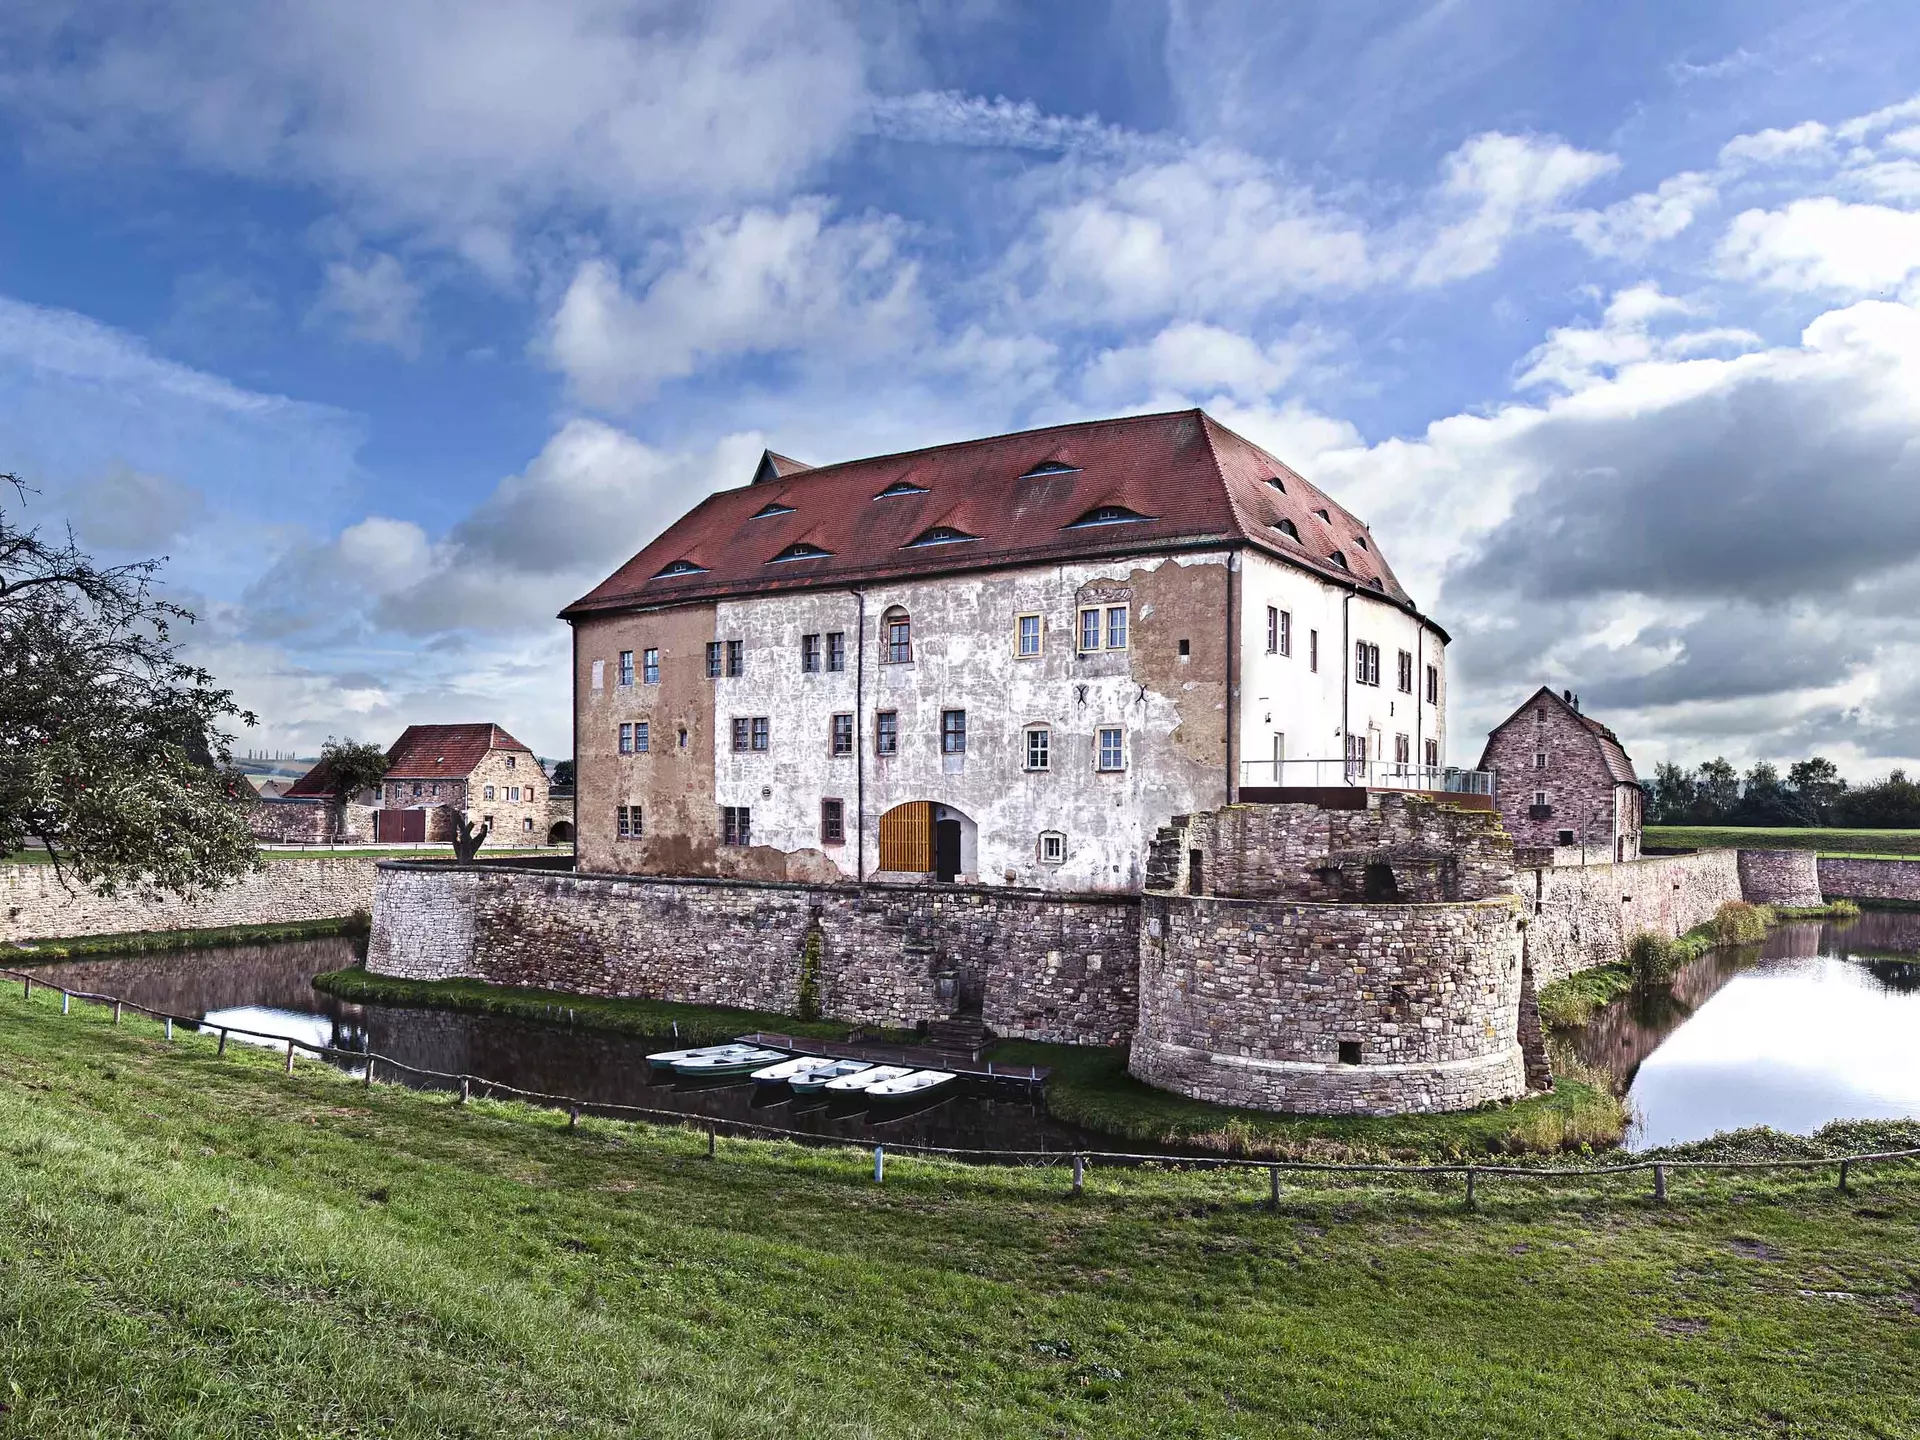 Bei einem Urlaub am Kyffhäuser lohnt der Besuch der Wasserburg Heldrungen. Sie ist die einzige, vollständig erhaltene, befestigte Wasserburg französischer Festungsbaukunst in Deutschland.